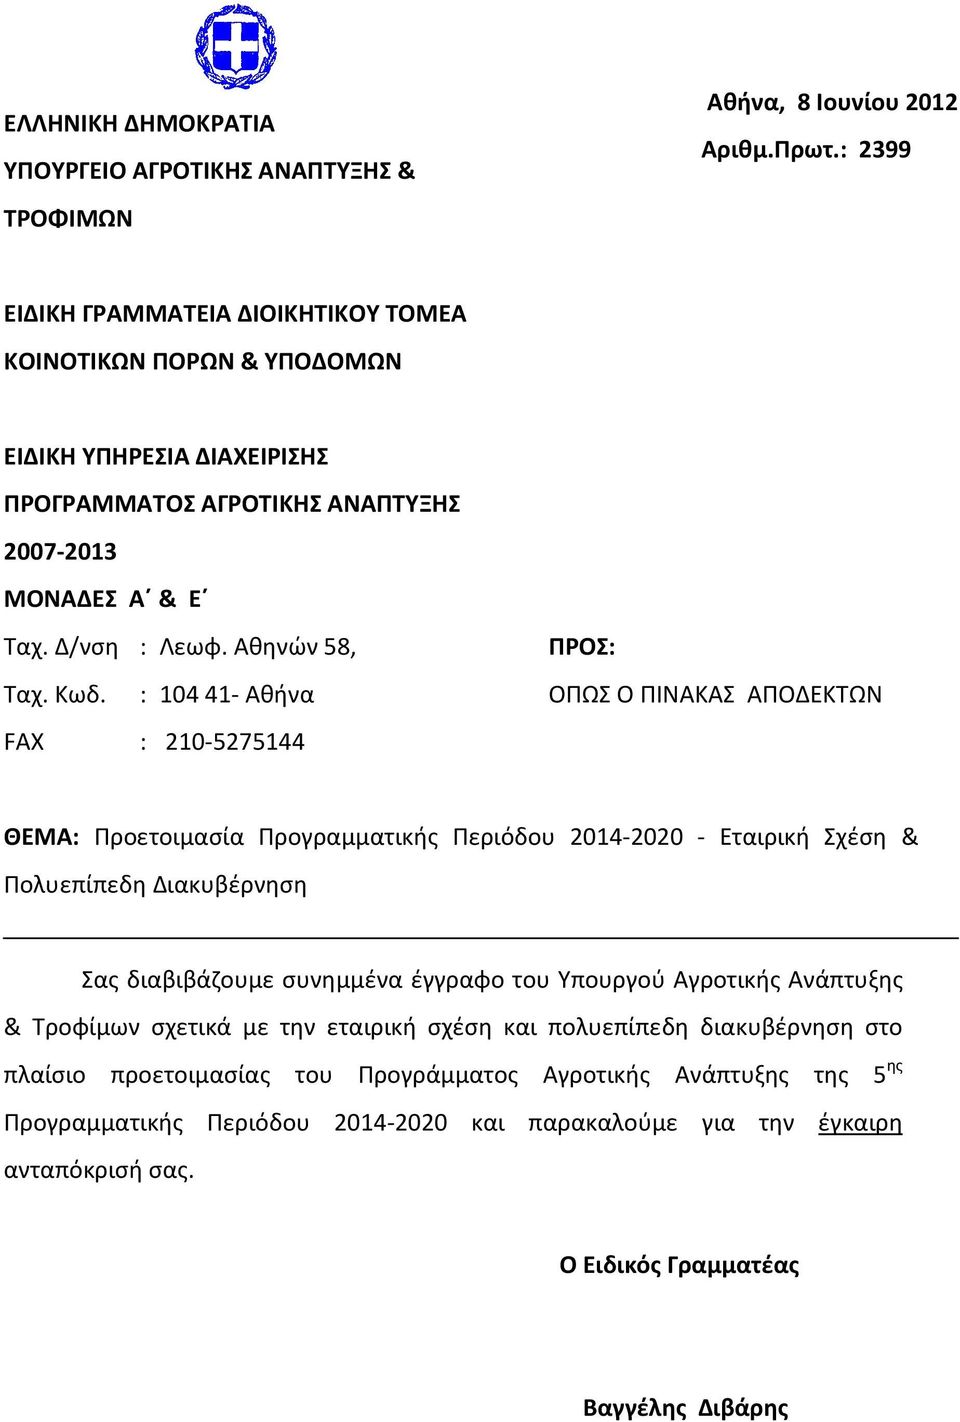 : 104 41- Αθήνα FAX : 210-5275144 ΠΡΟΣ: ΟΠΩΣ Ο ΠΙΝΑΚΑΣ ΑΠΟΔΕΚΤΩΝ ΘΕΜΑ: Προετοιμασία Προγραμματικής Περιόδου 2014-2020 - Εταιρική Σχέση & Πολυεπίπεδη Διακυβέρνηση Σας διαβιβάζουμε συνημμένα